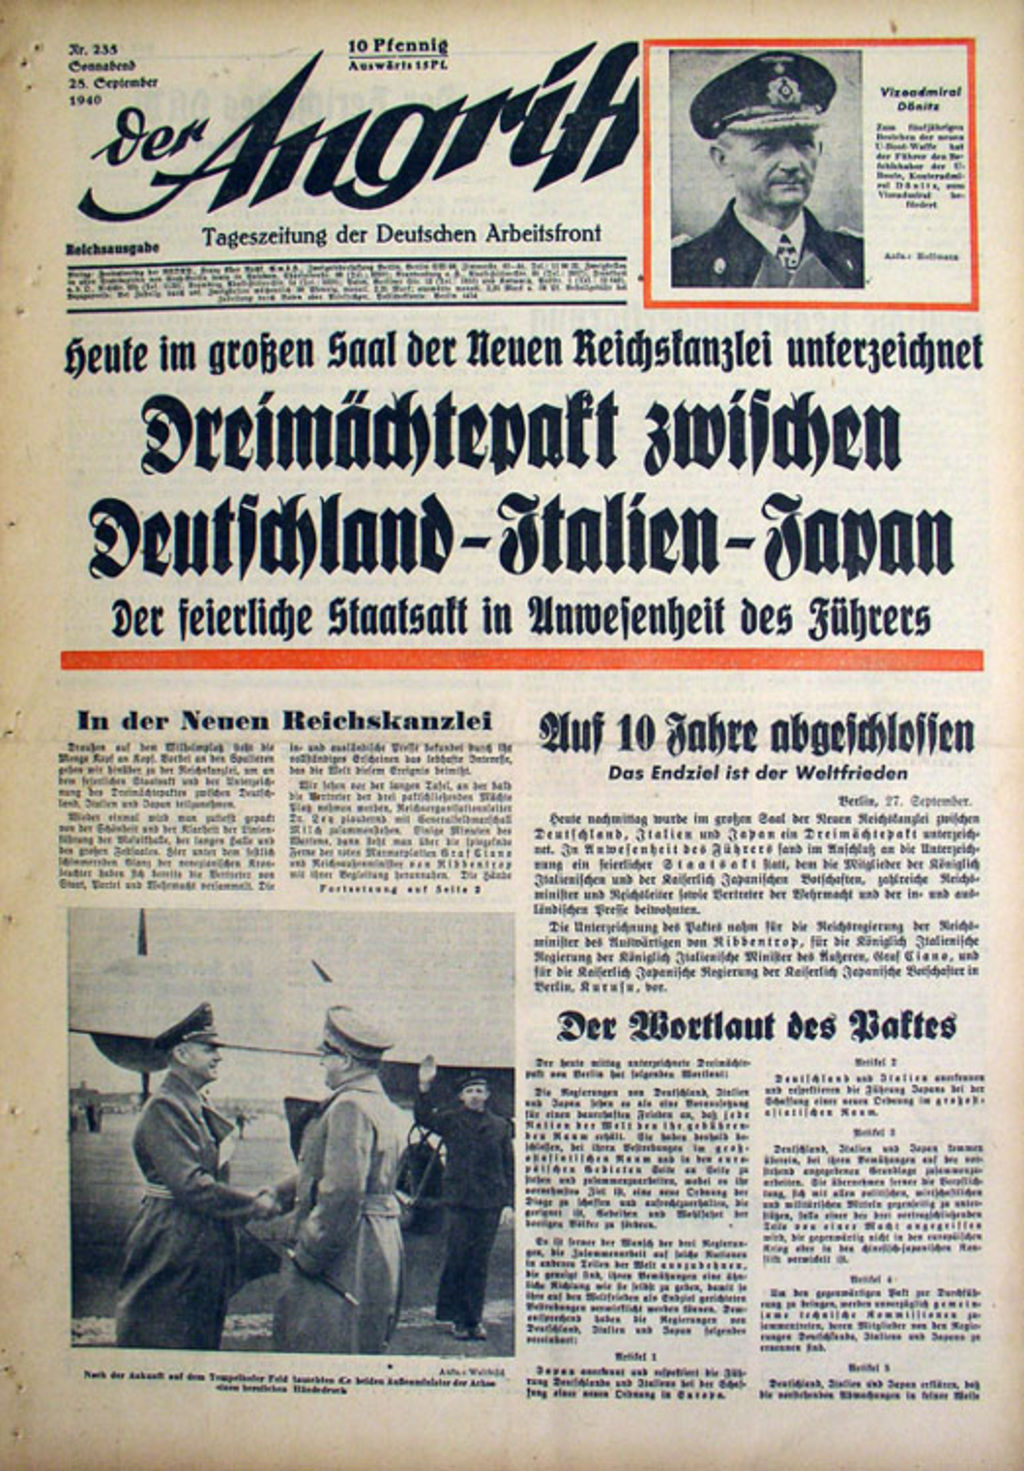 Exponat: Zeitung: "Der Angriff" zur Unterzeichnung des "Dreimächtepaktes", 1940